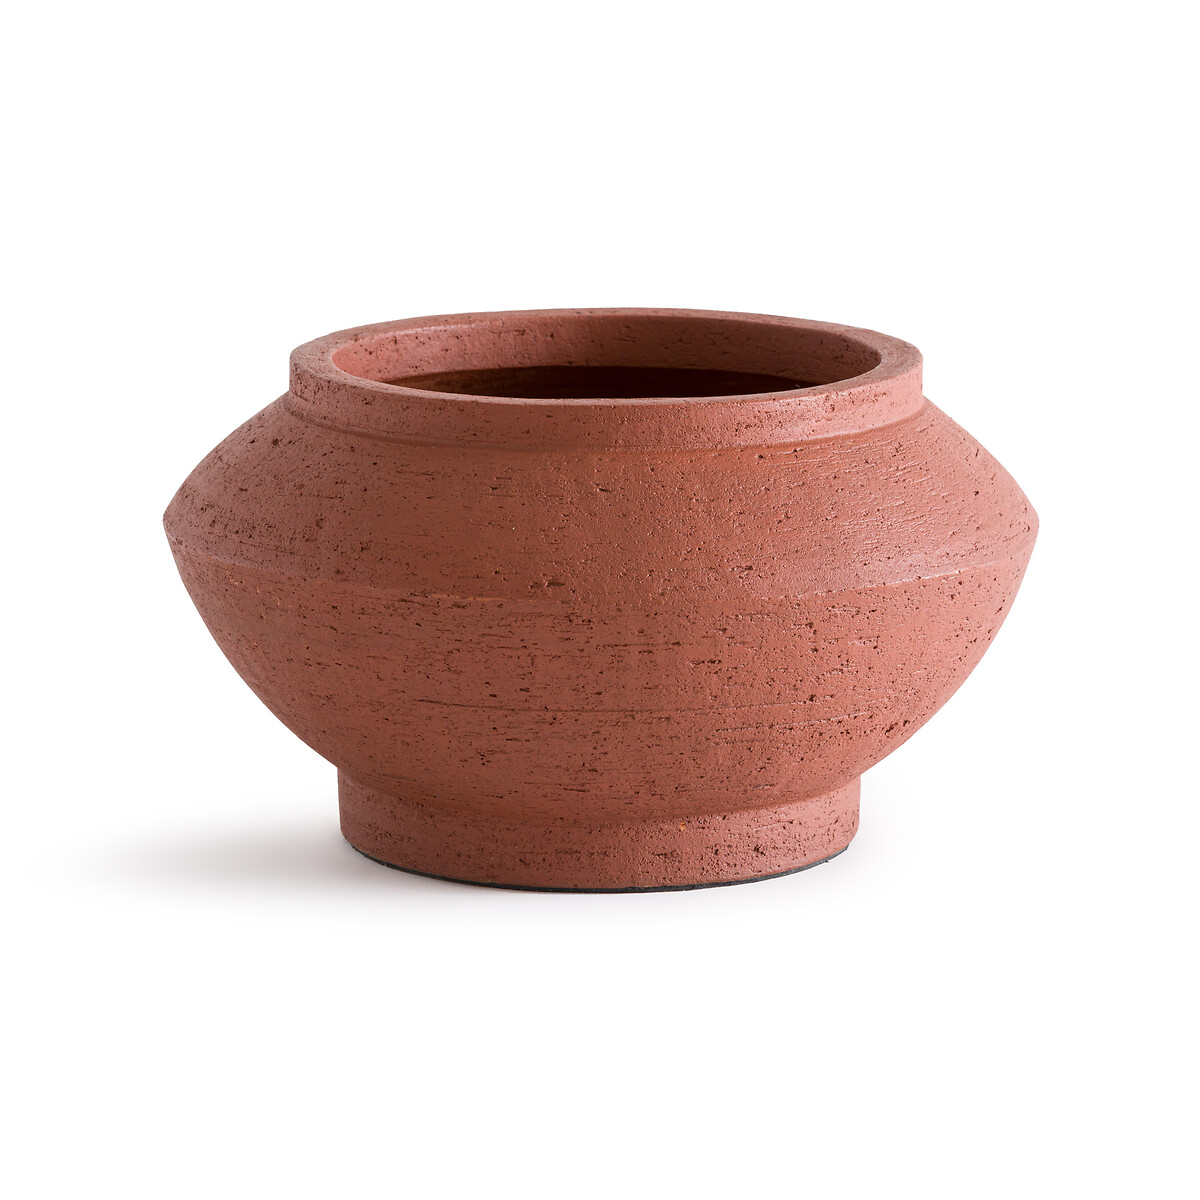 Ваза из обожженной глины Tulia единый размер каштановый ваза декоративная из обожженной глины в30 см makero единый размер желтый